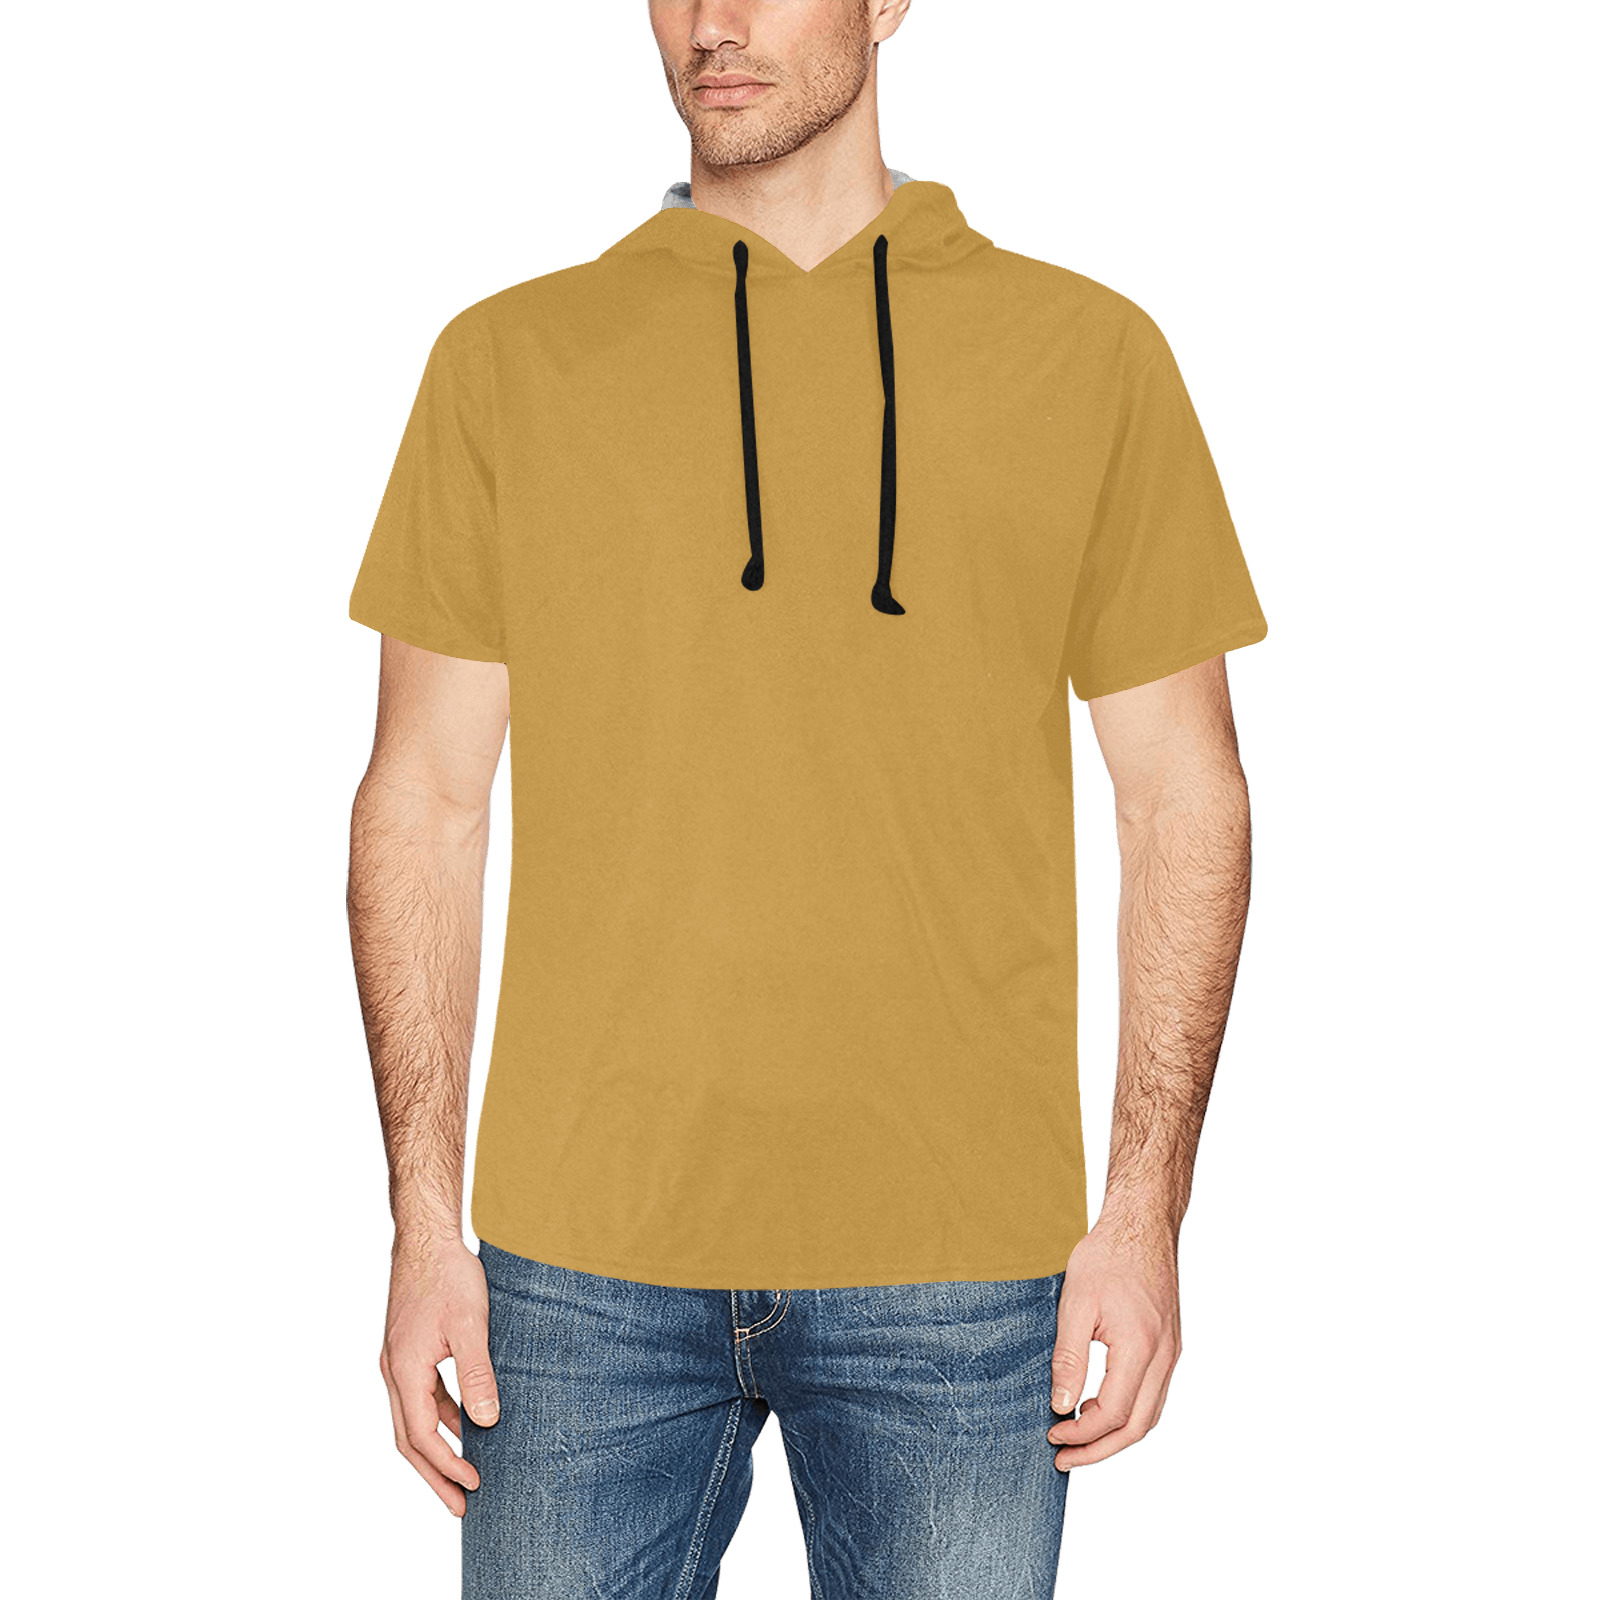 golden All Over Print Short Sleeve Hoodie for Men (Model H32)